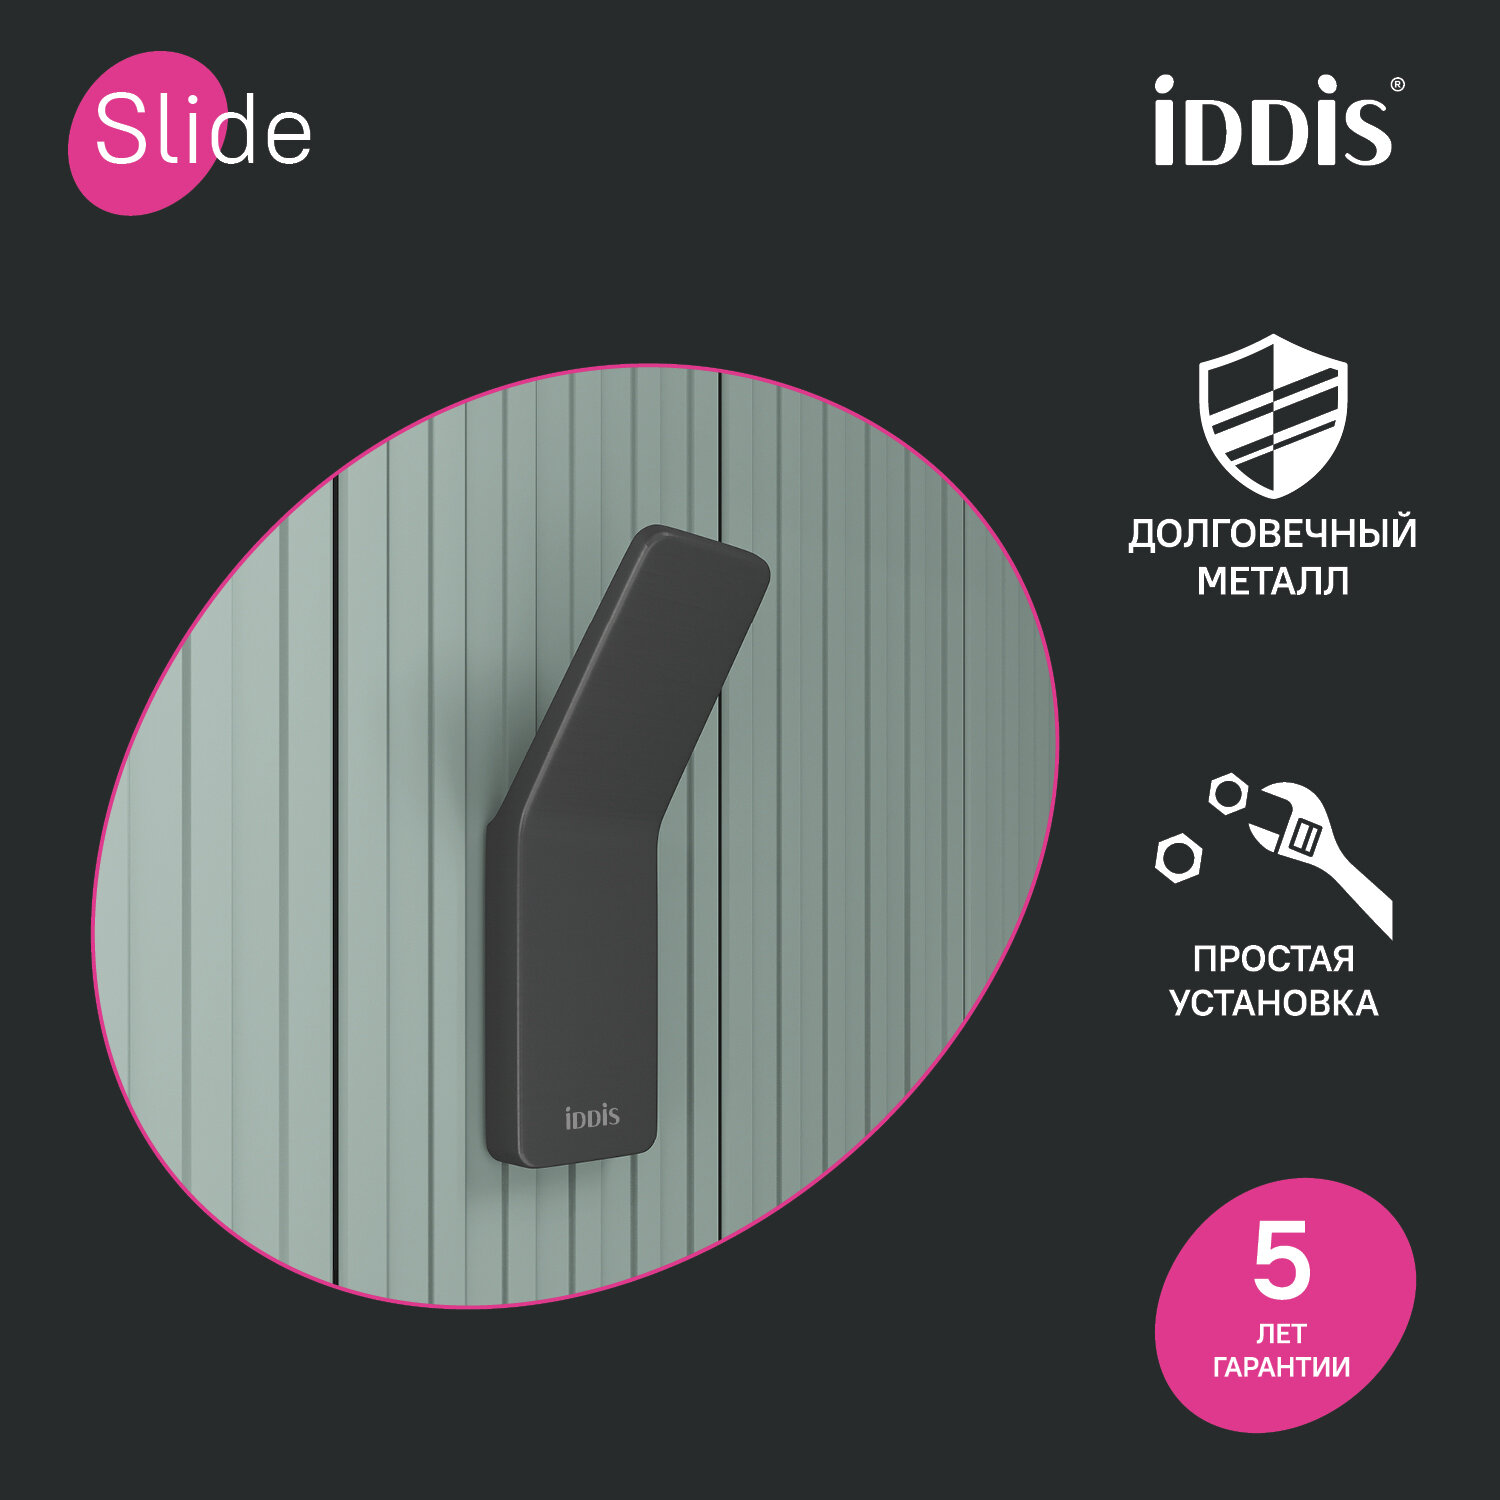 Крючок IDDIS Slide SLI10i41